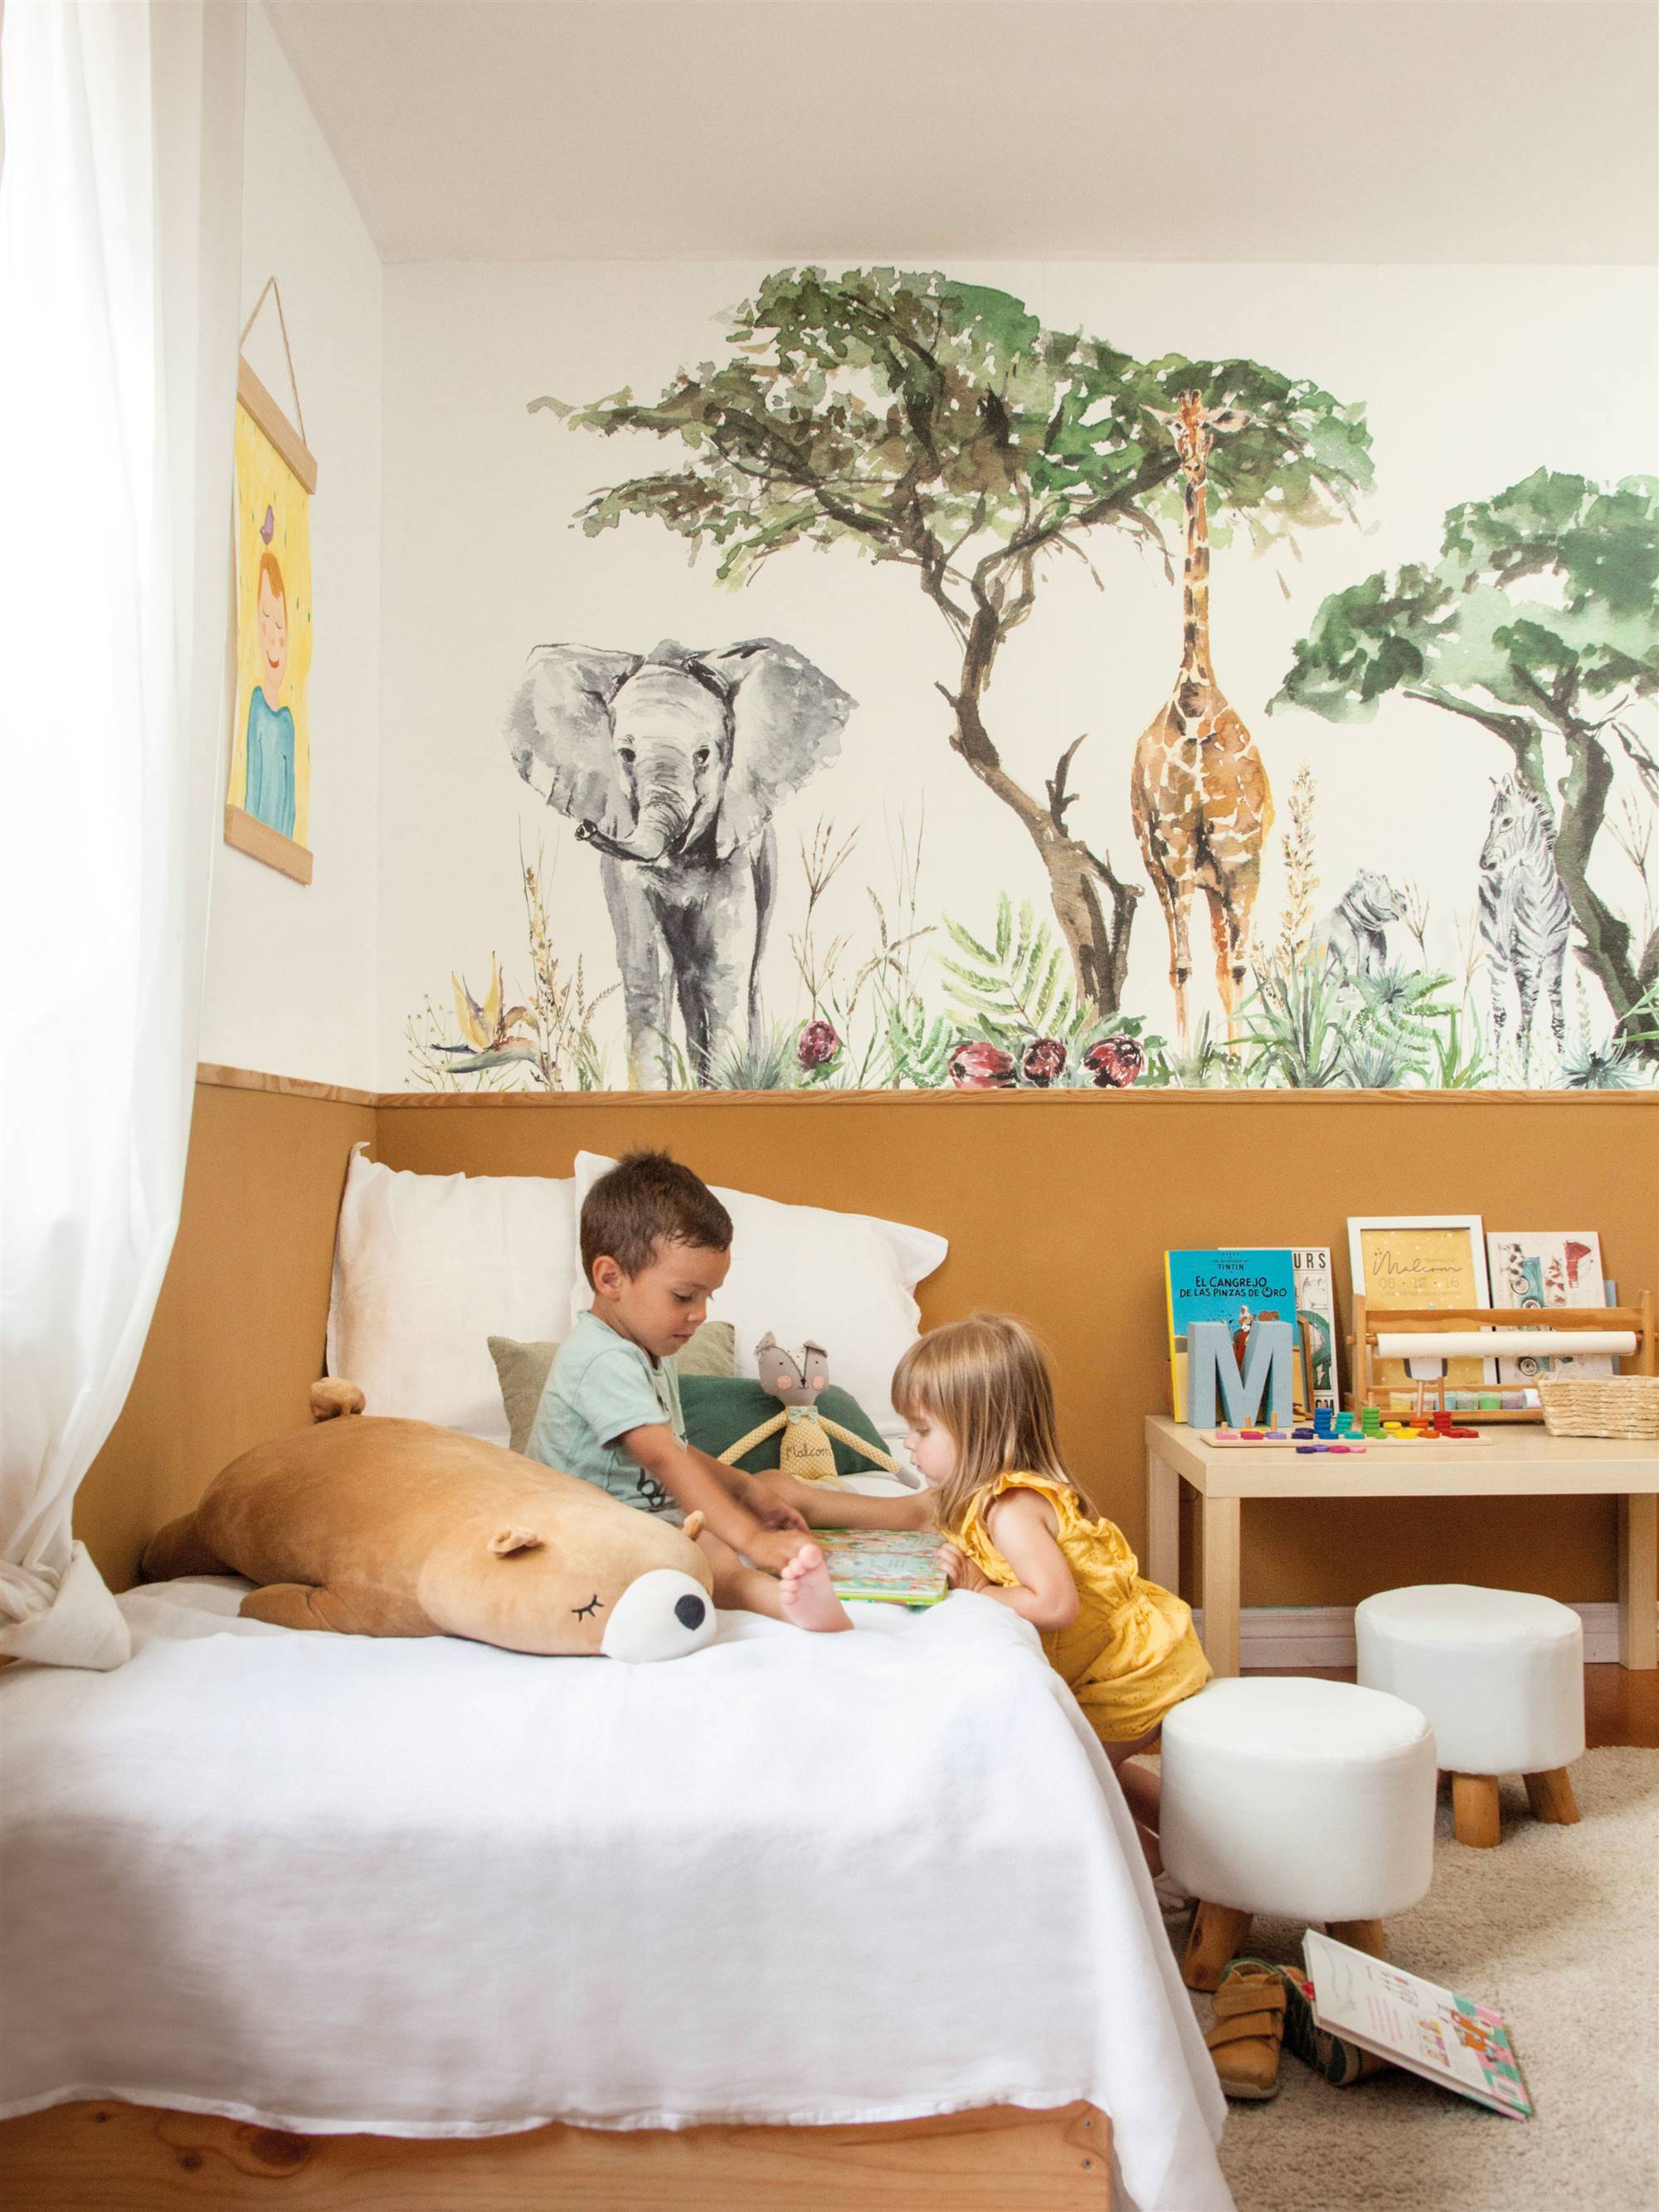 Dormitorio infantil con fotomural de animales en pared.